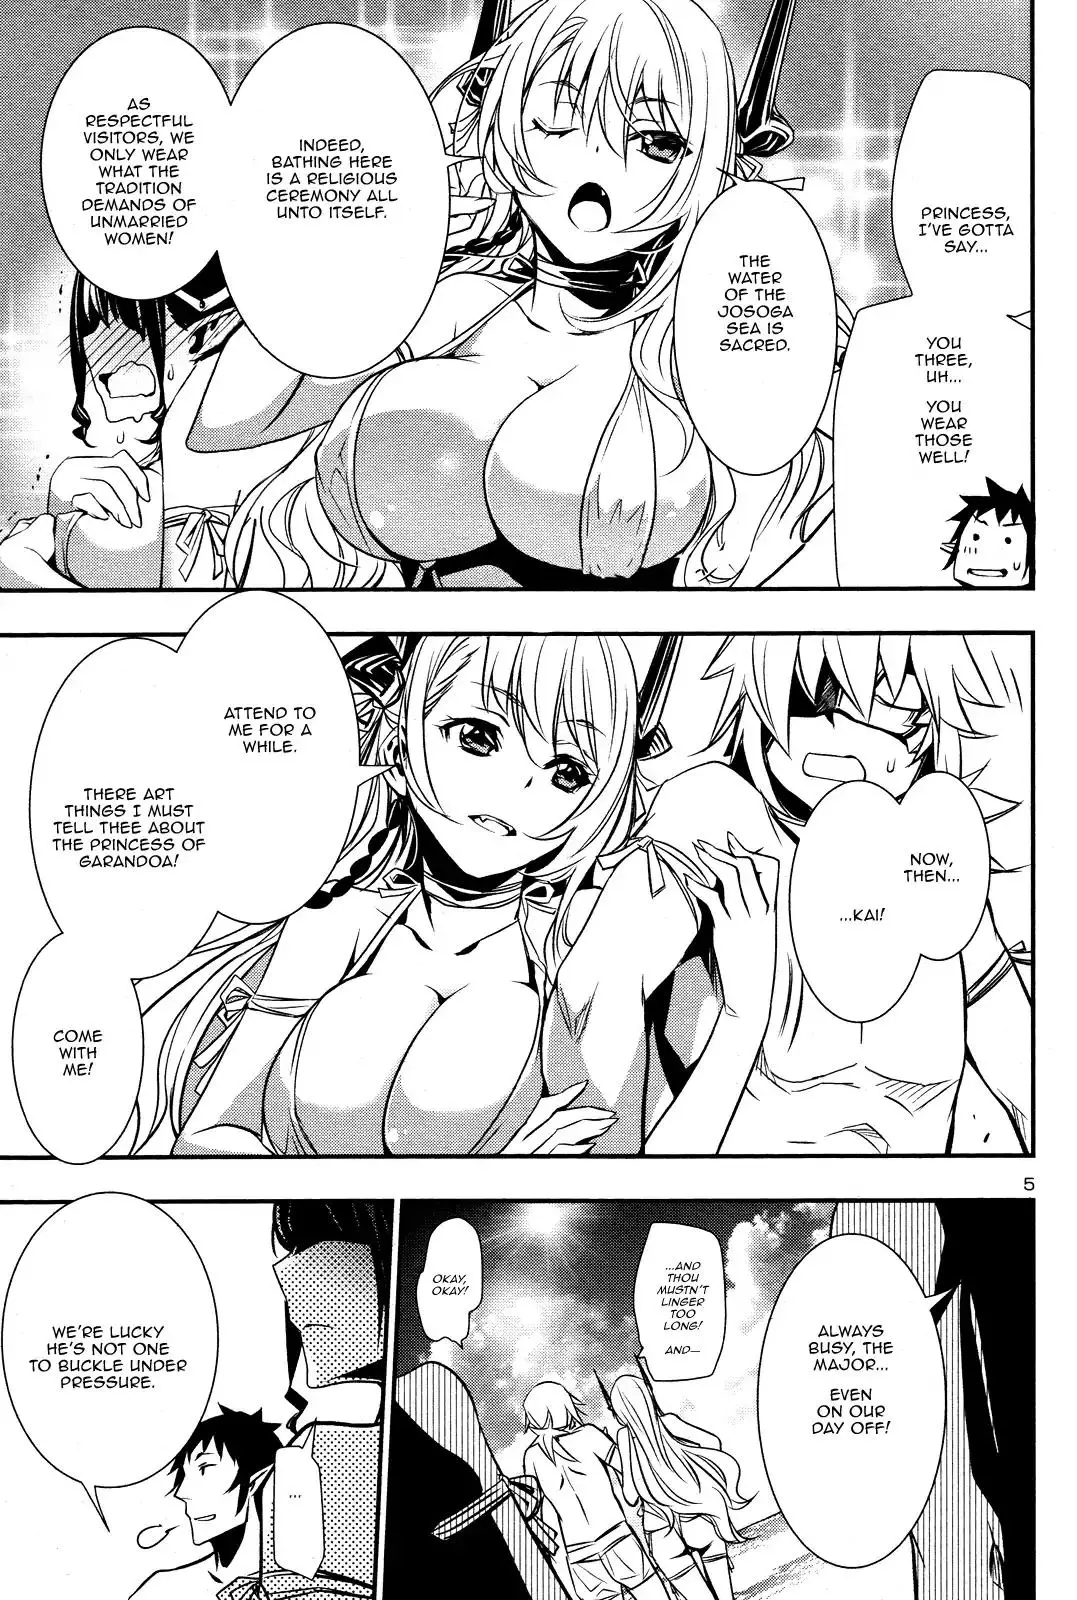 Shinju no Nectar - 18 page 4